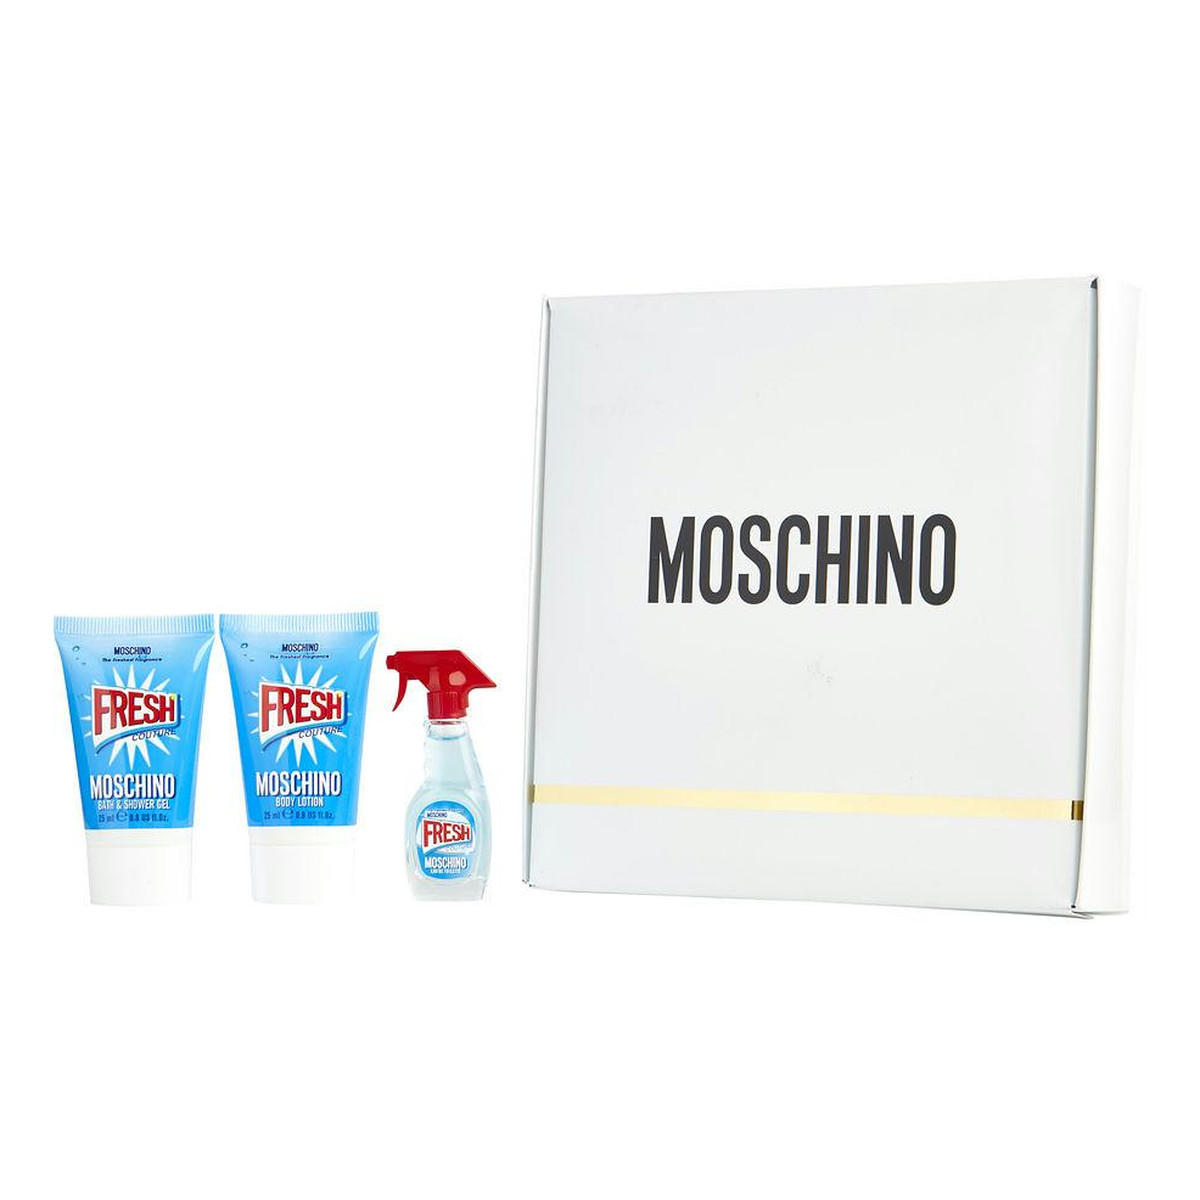 Moschino Fresh Couture Zestaw miniaturka wody toaletowej 5ml + balsam do ciała 25ml + żel pod prysznic 25ml